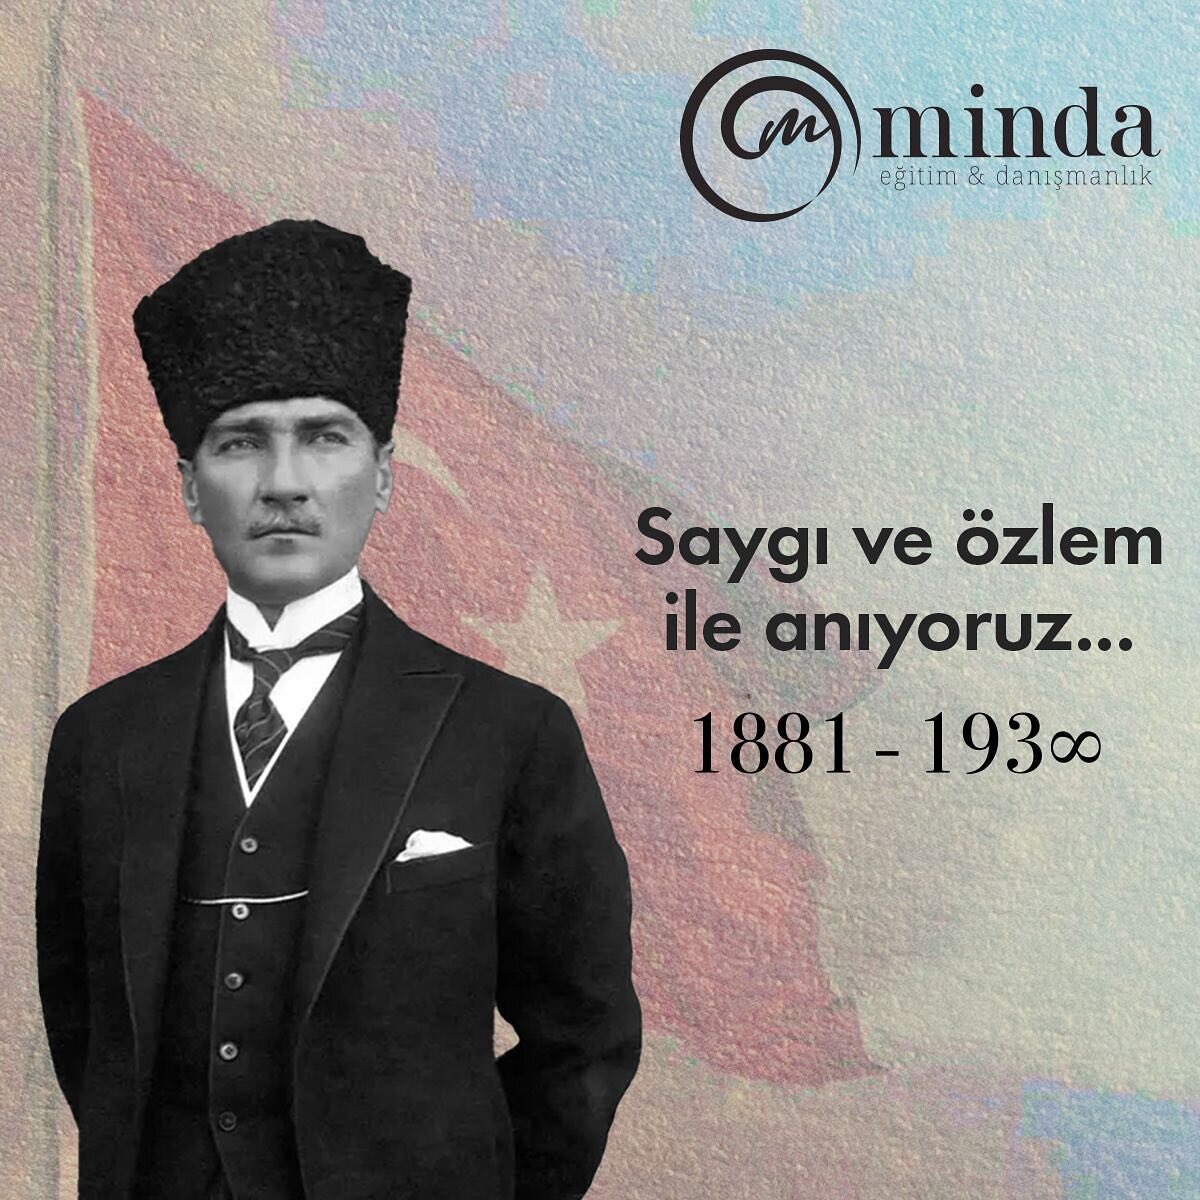 Saygı ve &ouml;zlem ile anıyoruz...

#Atat&uuml;rk #minda #kurumsalegitim #kurumsalmindfulness #mindfulness